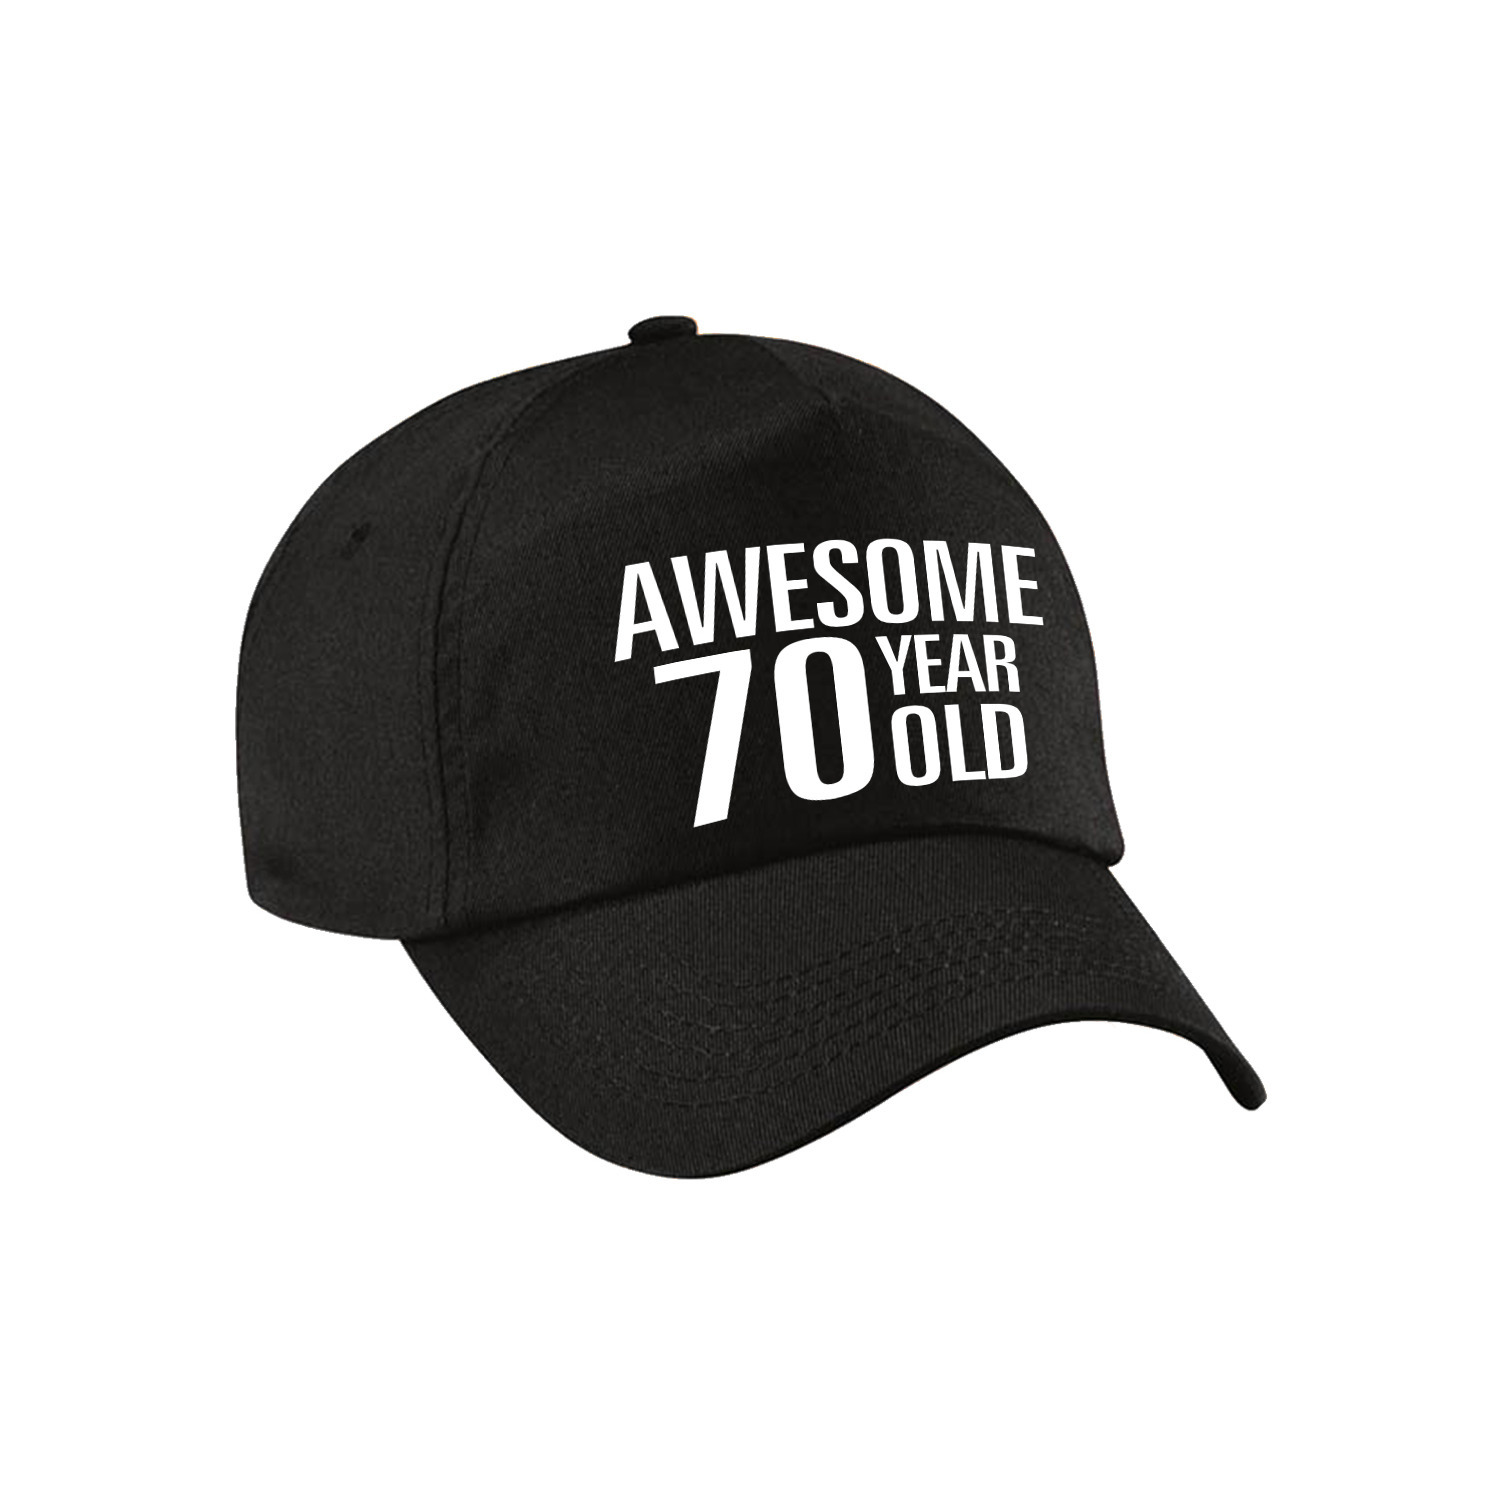 Awesome 70 year old verjaardag pet-cap zwart voor dames en heren